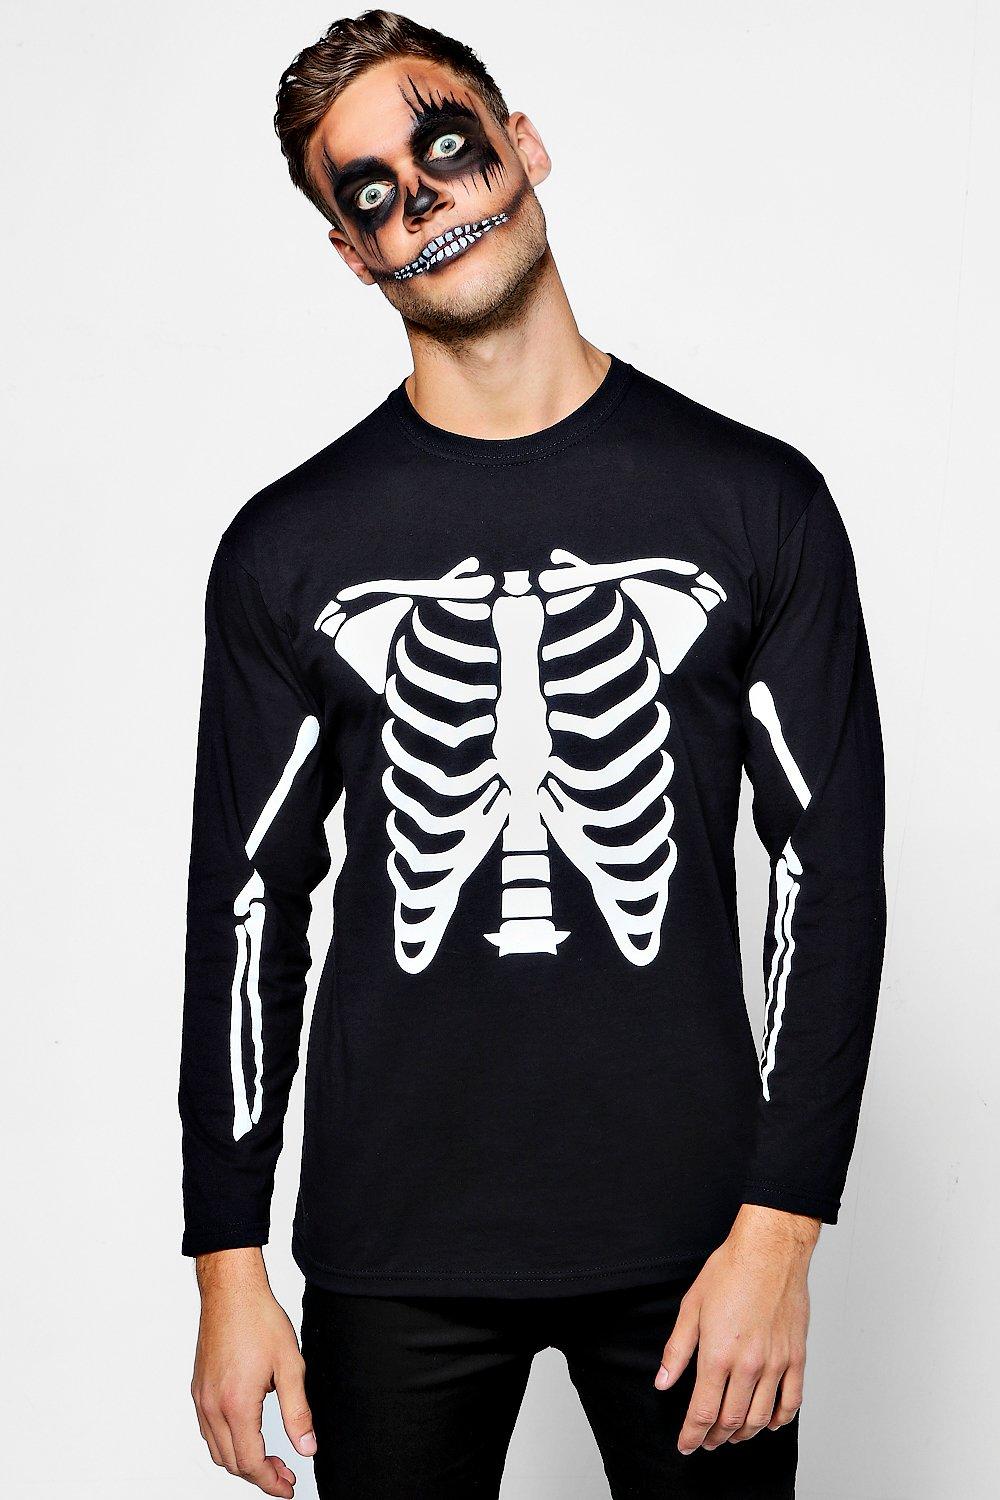 Details about   Men Halloween Short Sleeve O-Neck T-Shirt Skeleton Internal Organs 3D Print Tops 